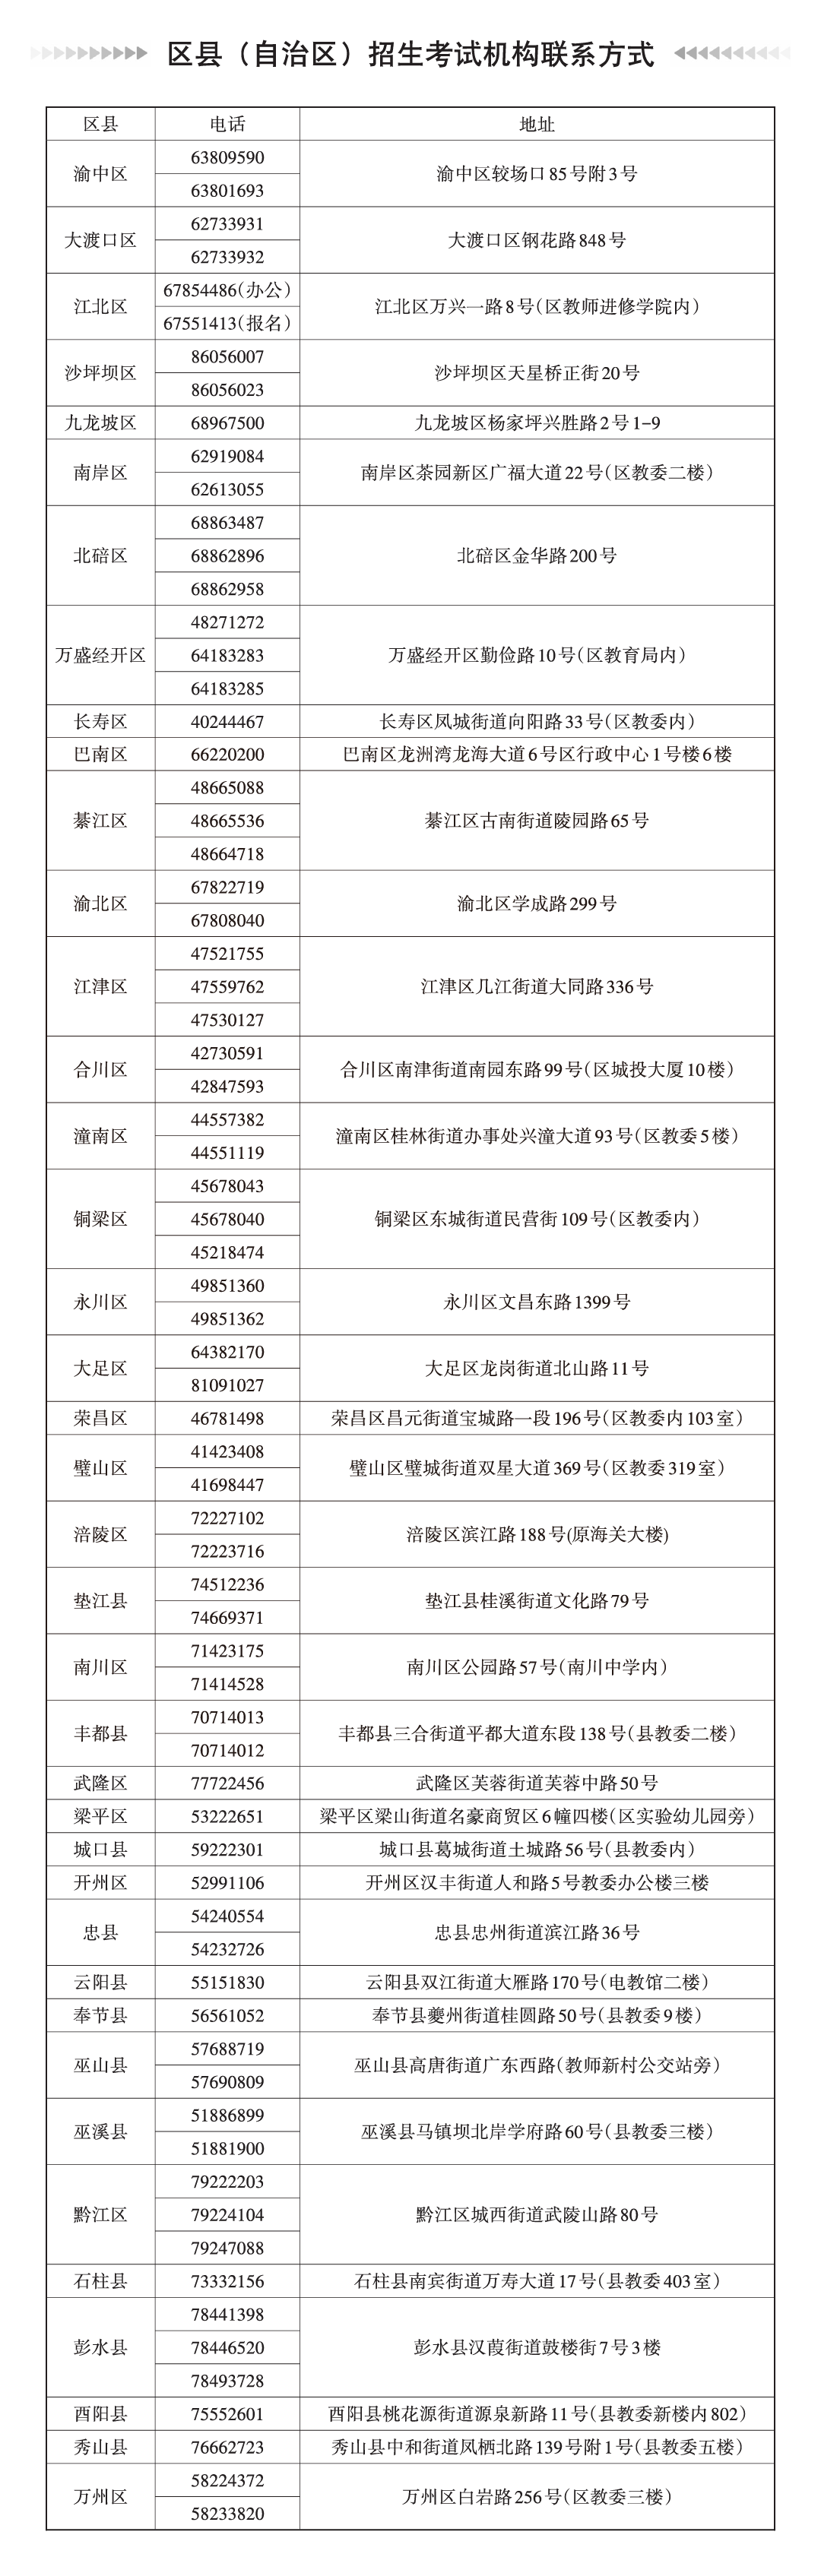 重庆 - 2022年普通高考报名工作温馨提示